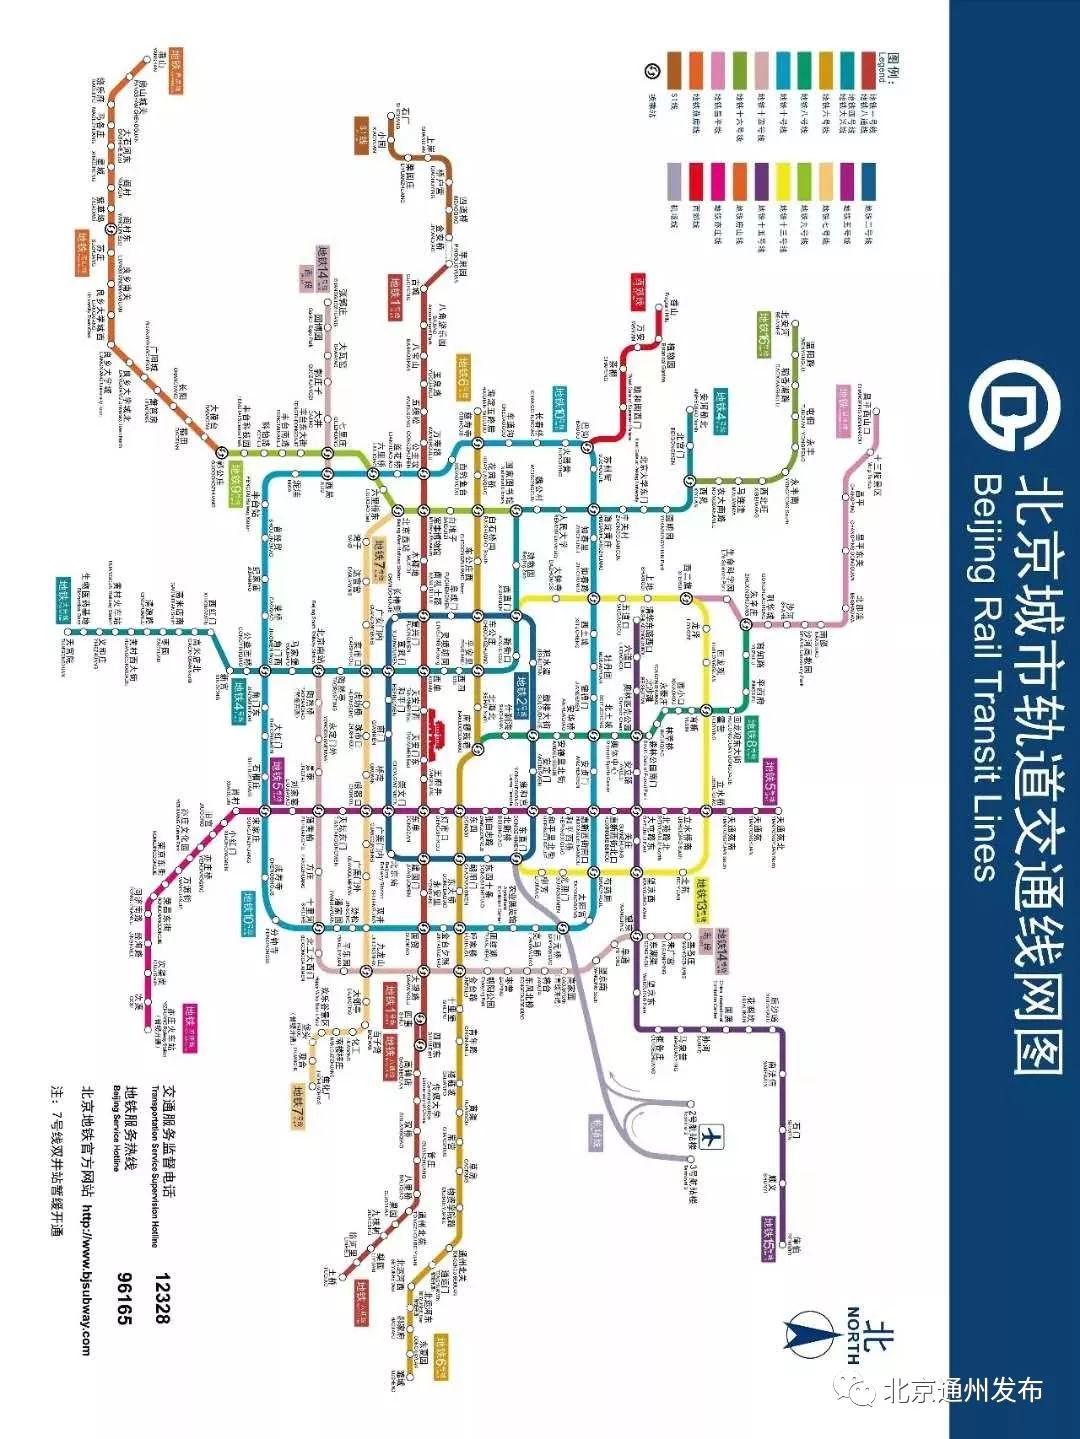 北京地铁公司所辖 1号线,2号线,八通线,昌平线,亦庄线,房山线 6条线路